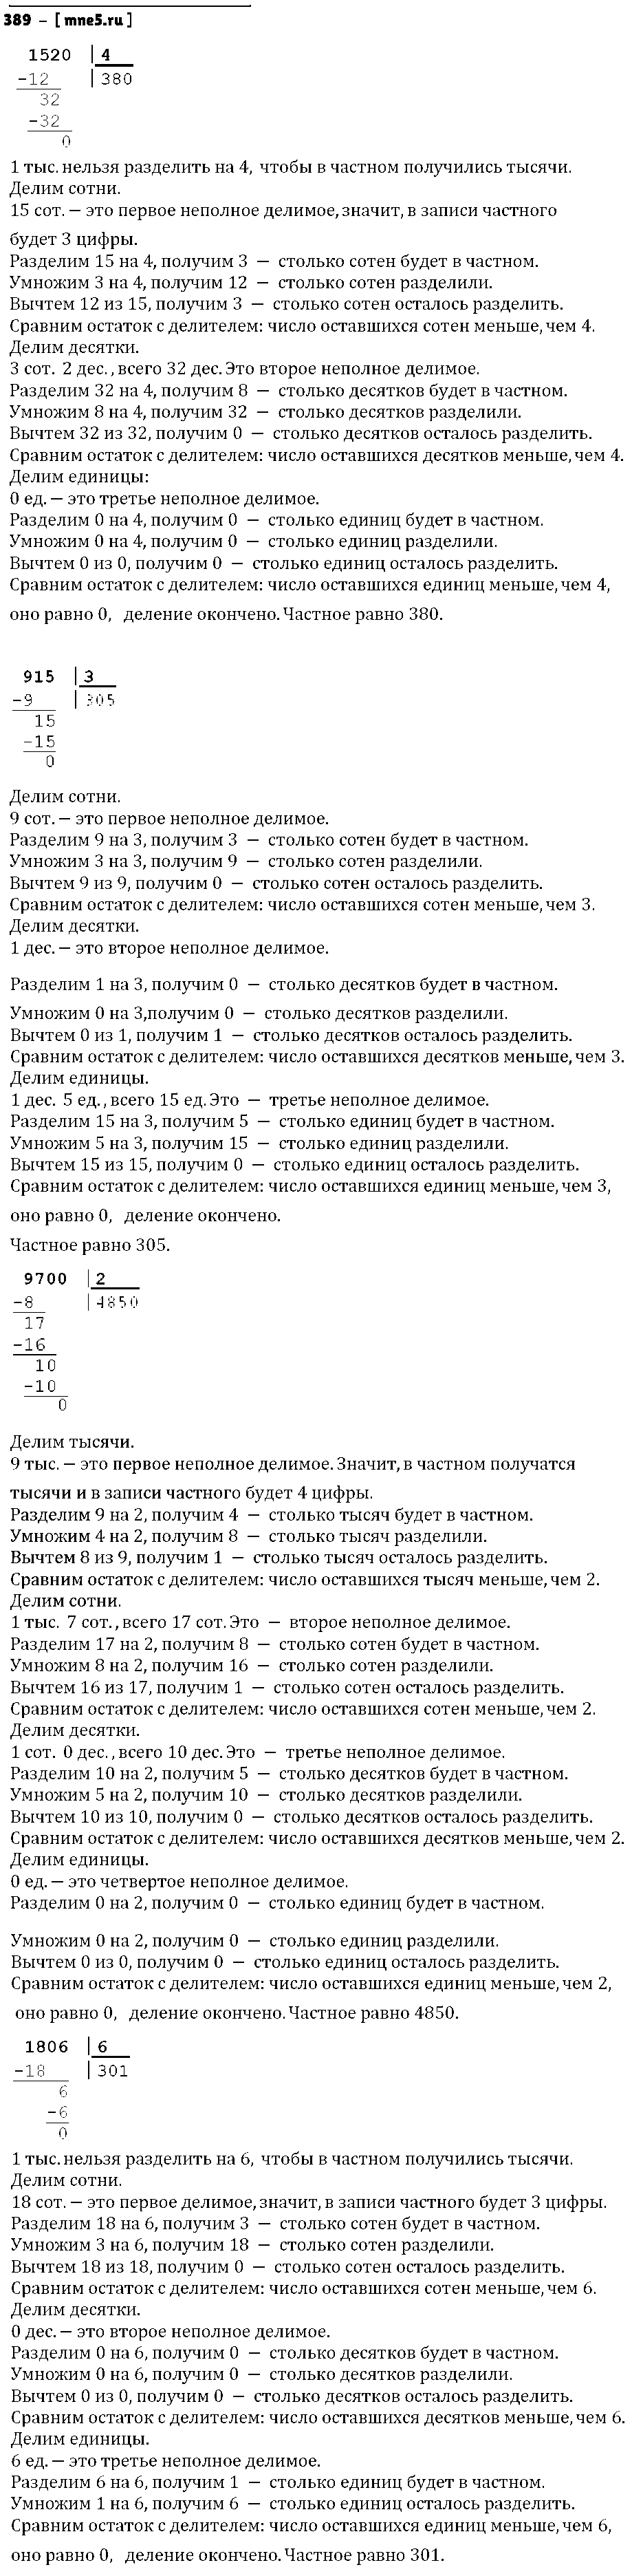 ГДЗ Математика 4 класс - 389